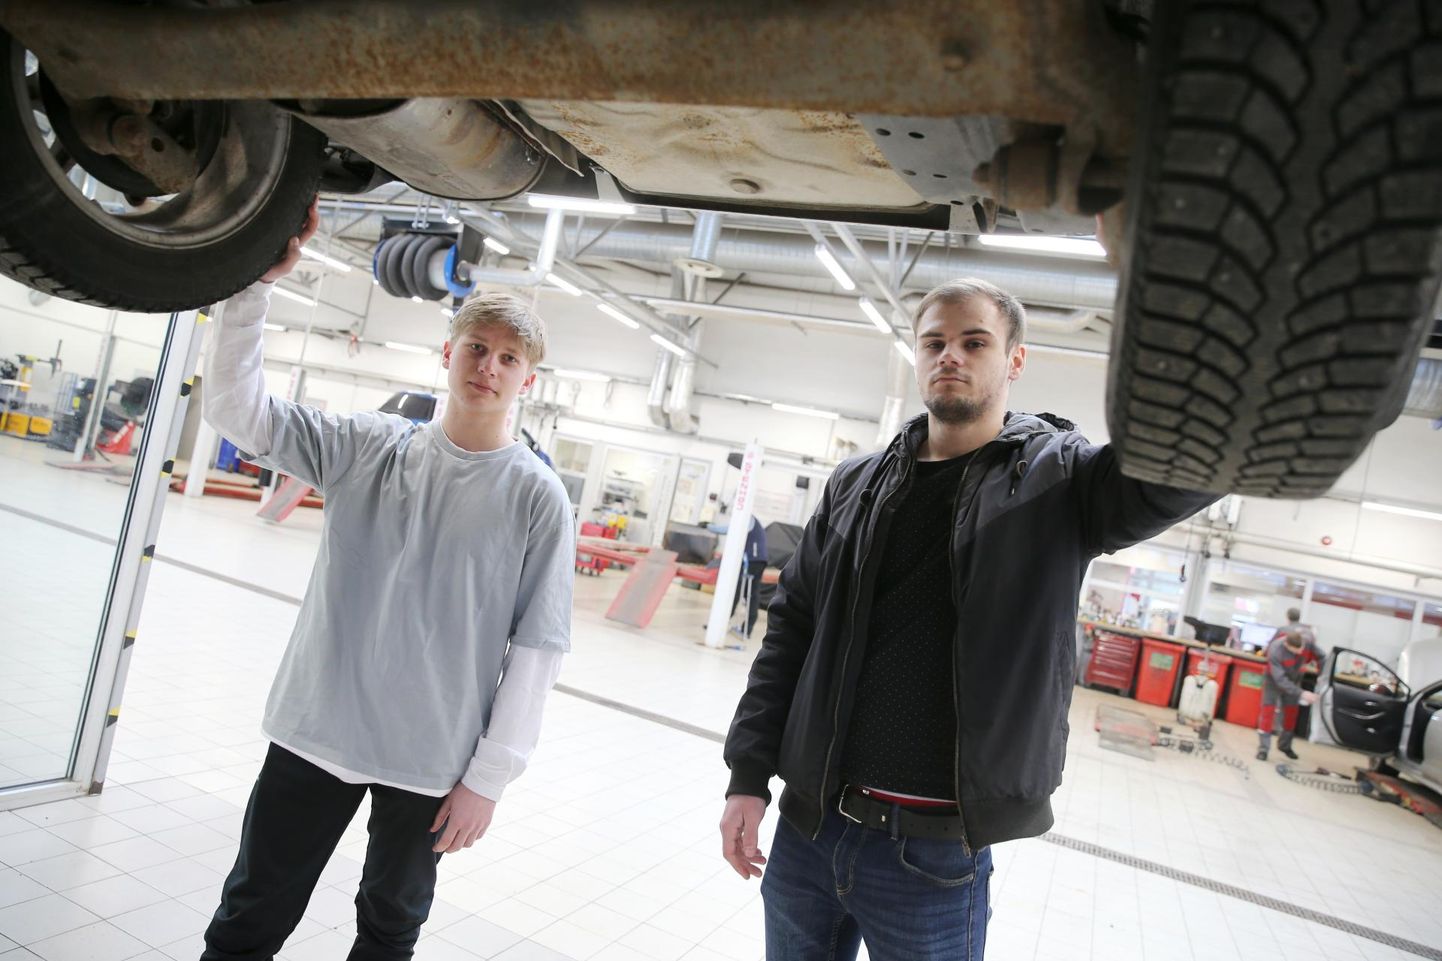 Tulevased autotehnikud Erko Tiimann (vasakul) ja Tanel Aun olid Amservis abis ajal, kui sealsed töötajad haigestusid.